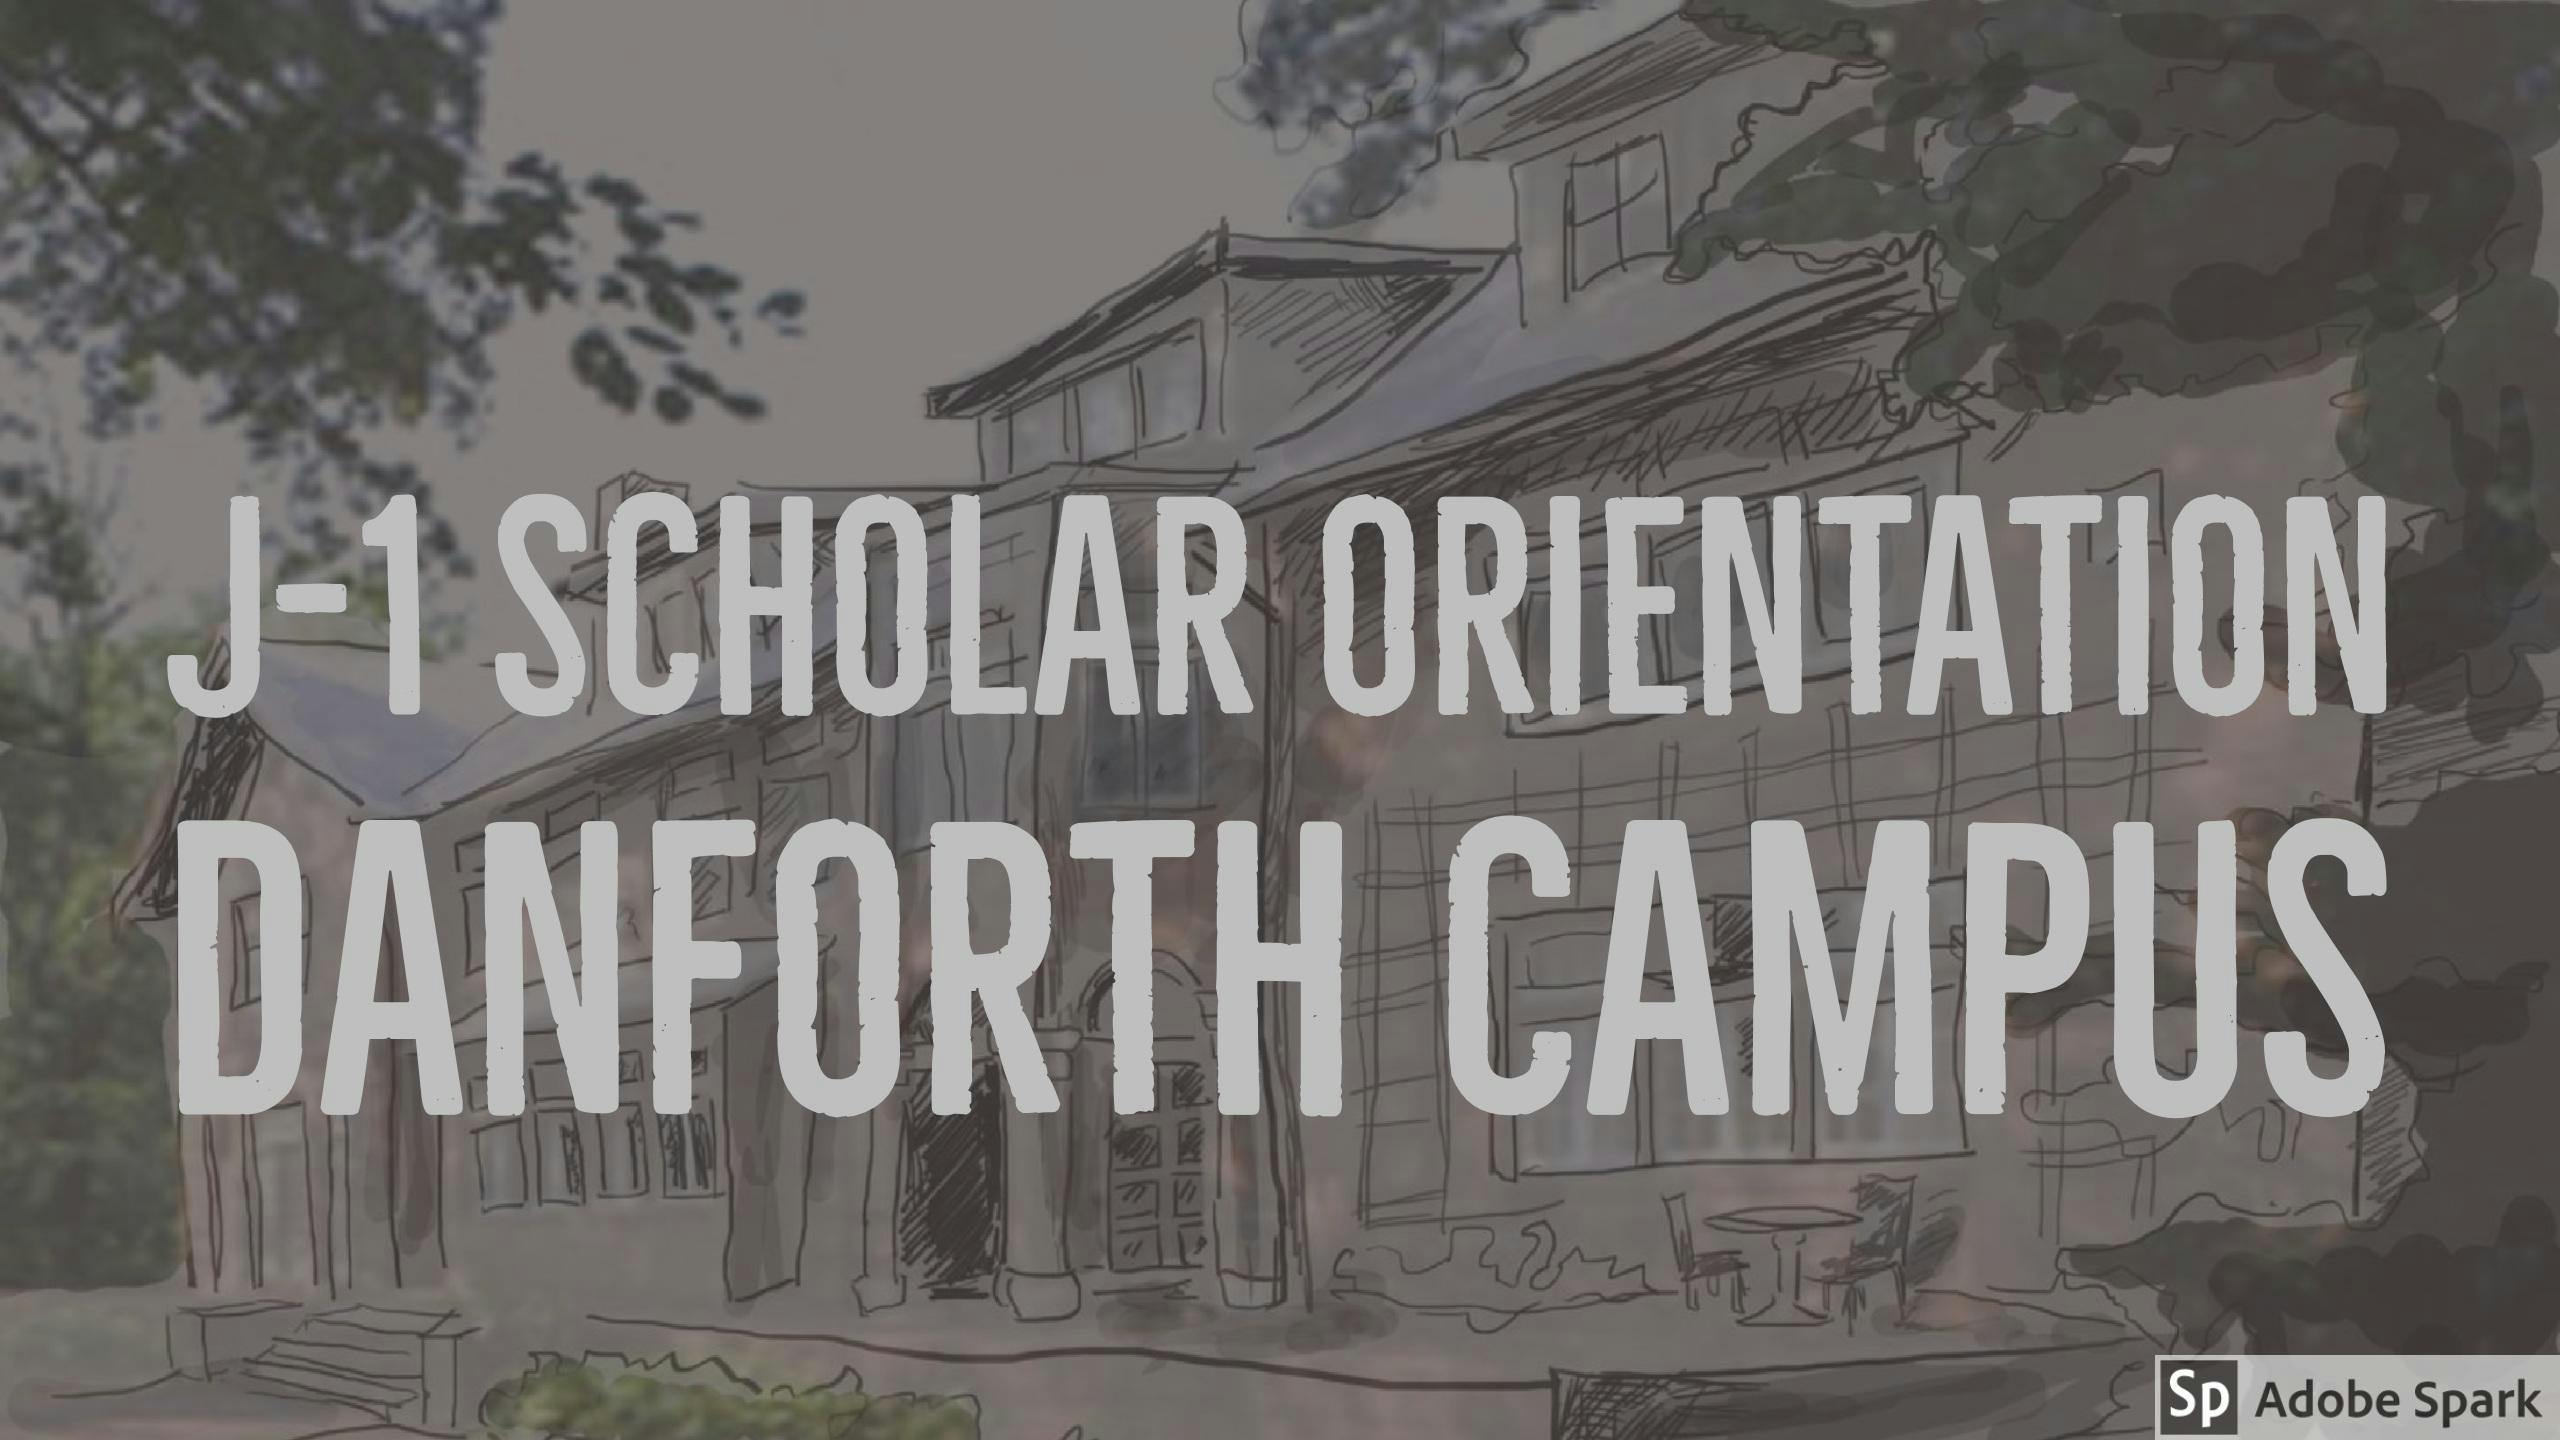 J-1 Scholar Orientation: Danforth Campus